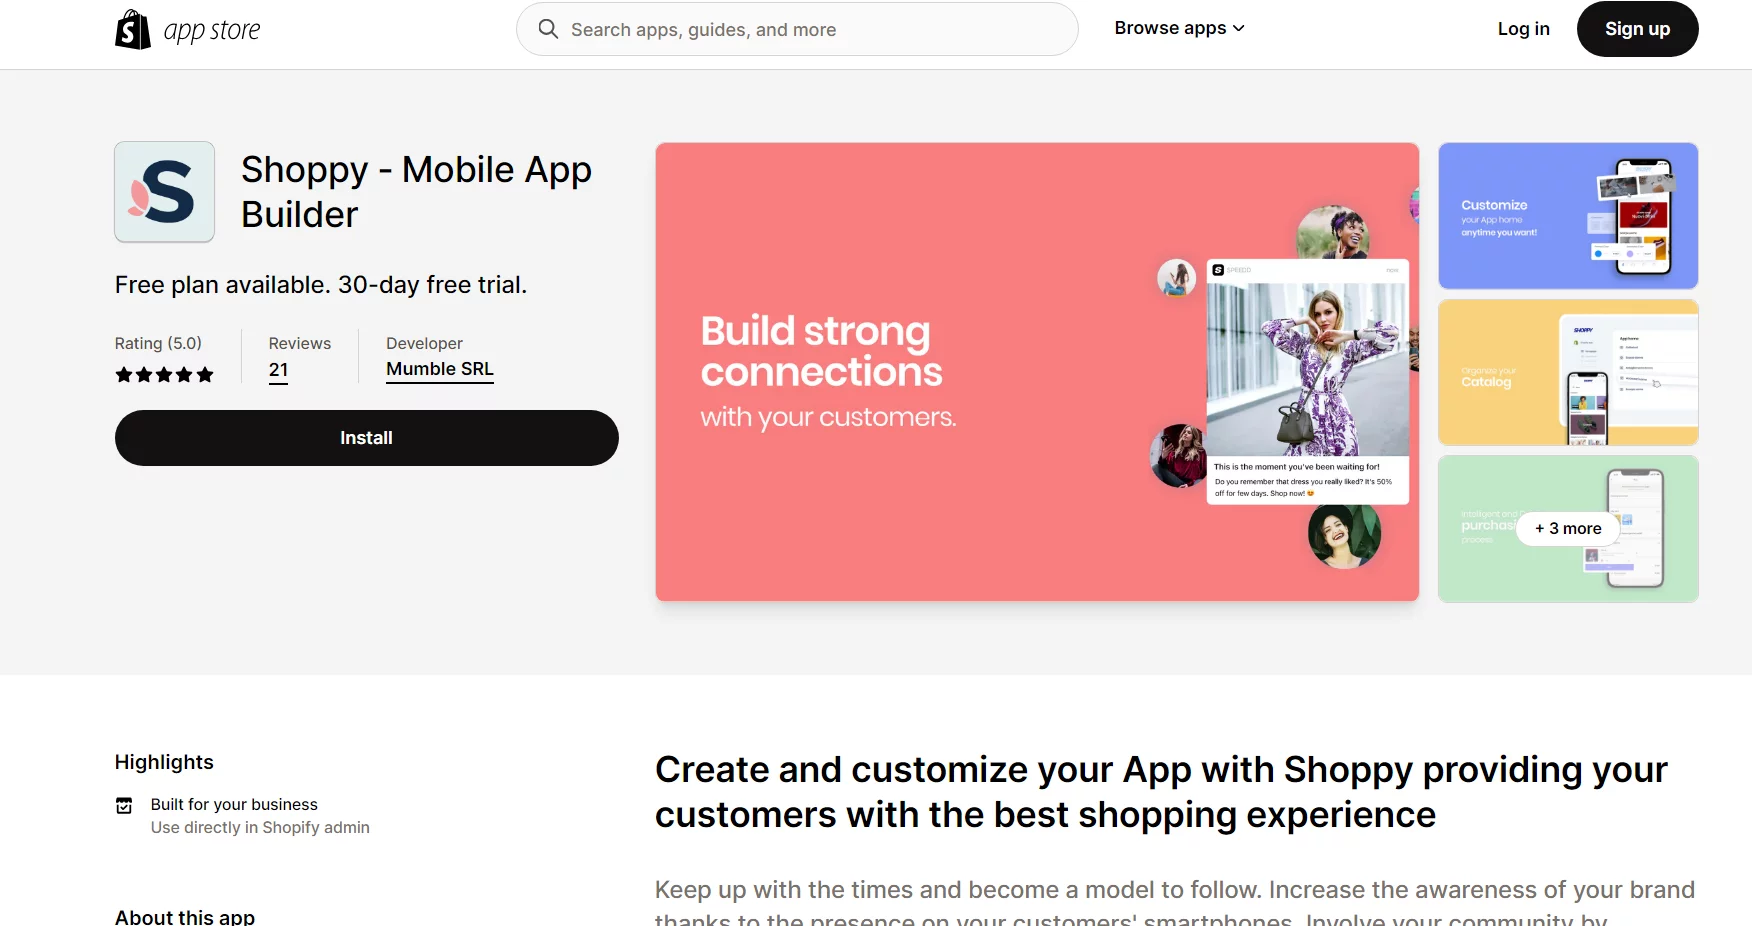 Best Shopify Analytics Apps: Shoppy ‑ Mobile App Builder